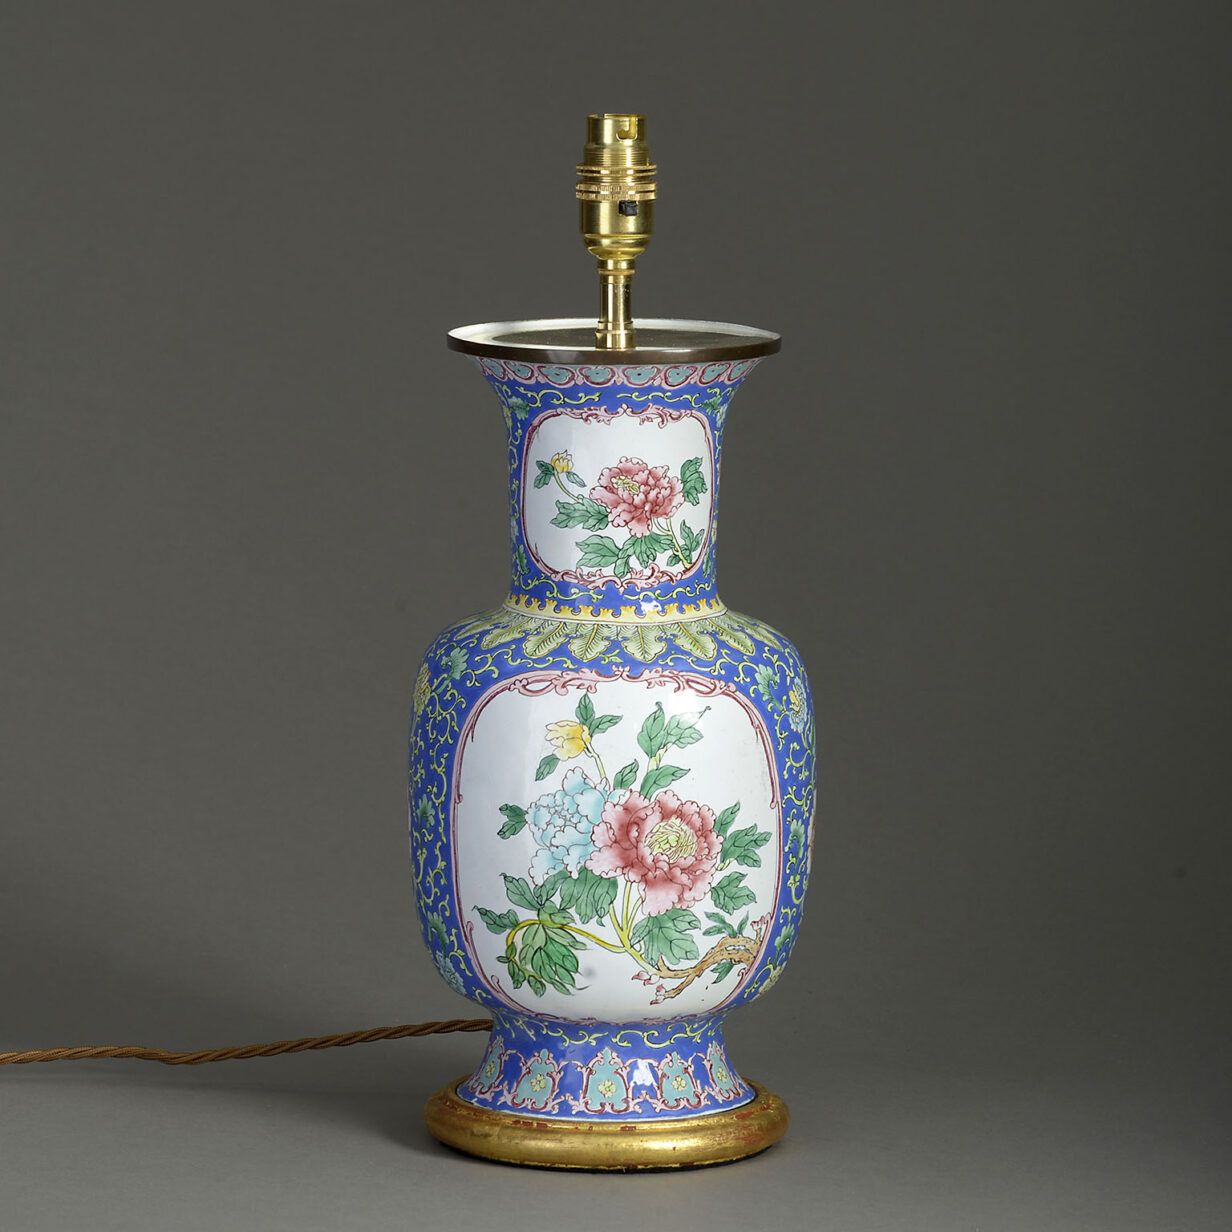 Mid-20th century republic period canton enamel vase lamp